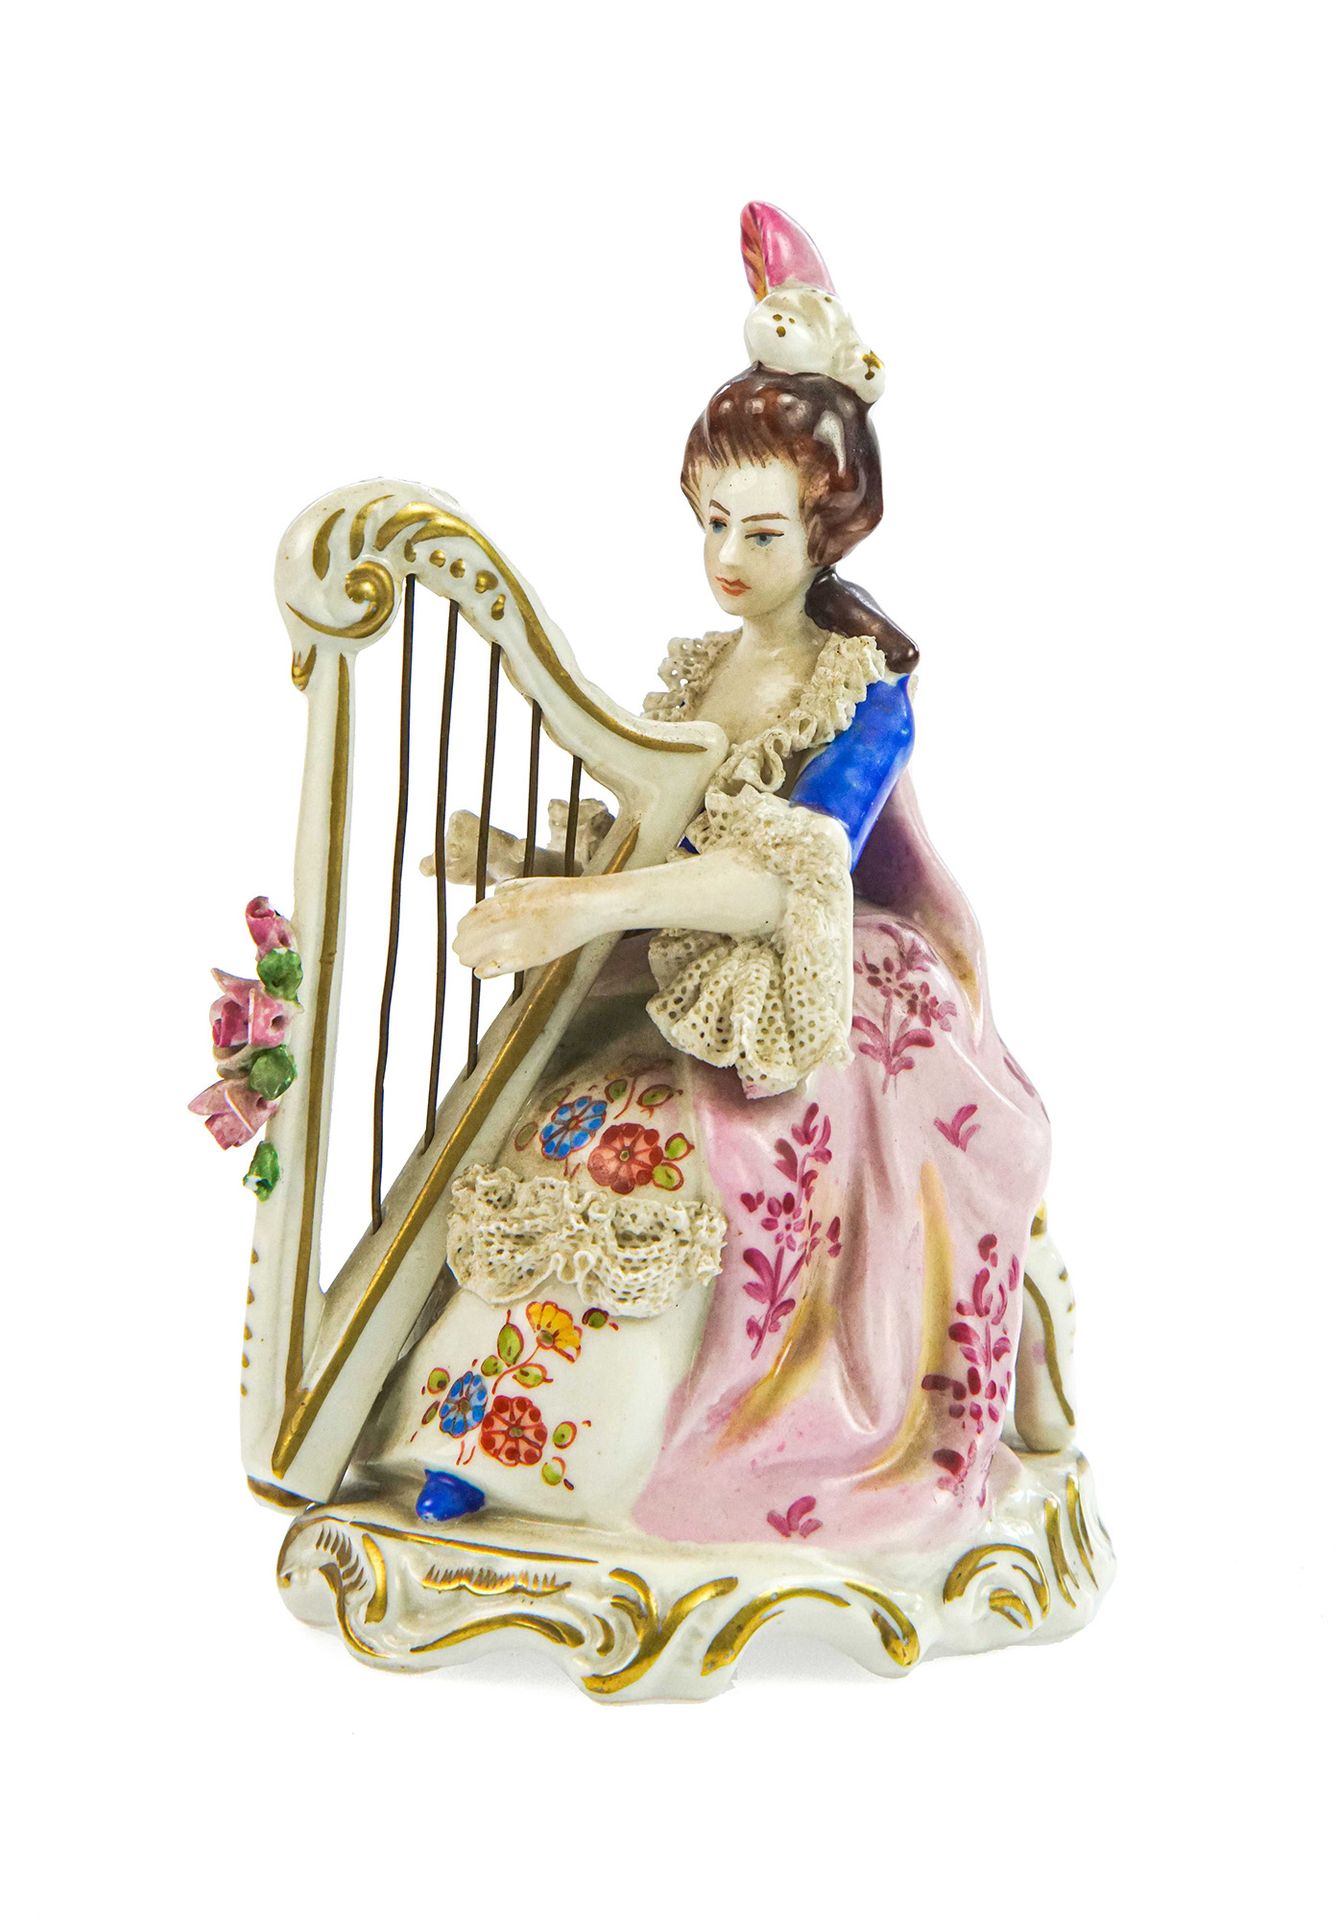 Null 描绘一位女士演奏竖琴的雕像

多彩瓷器，Capodimonte型制造

h 12,5 cm